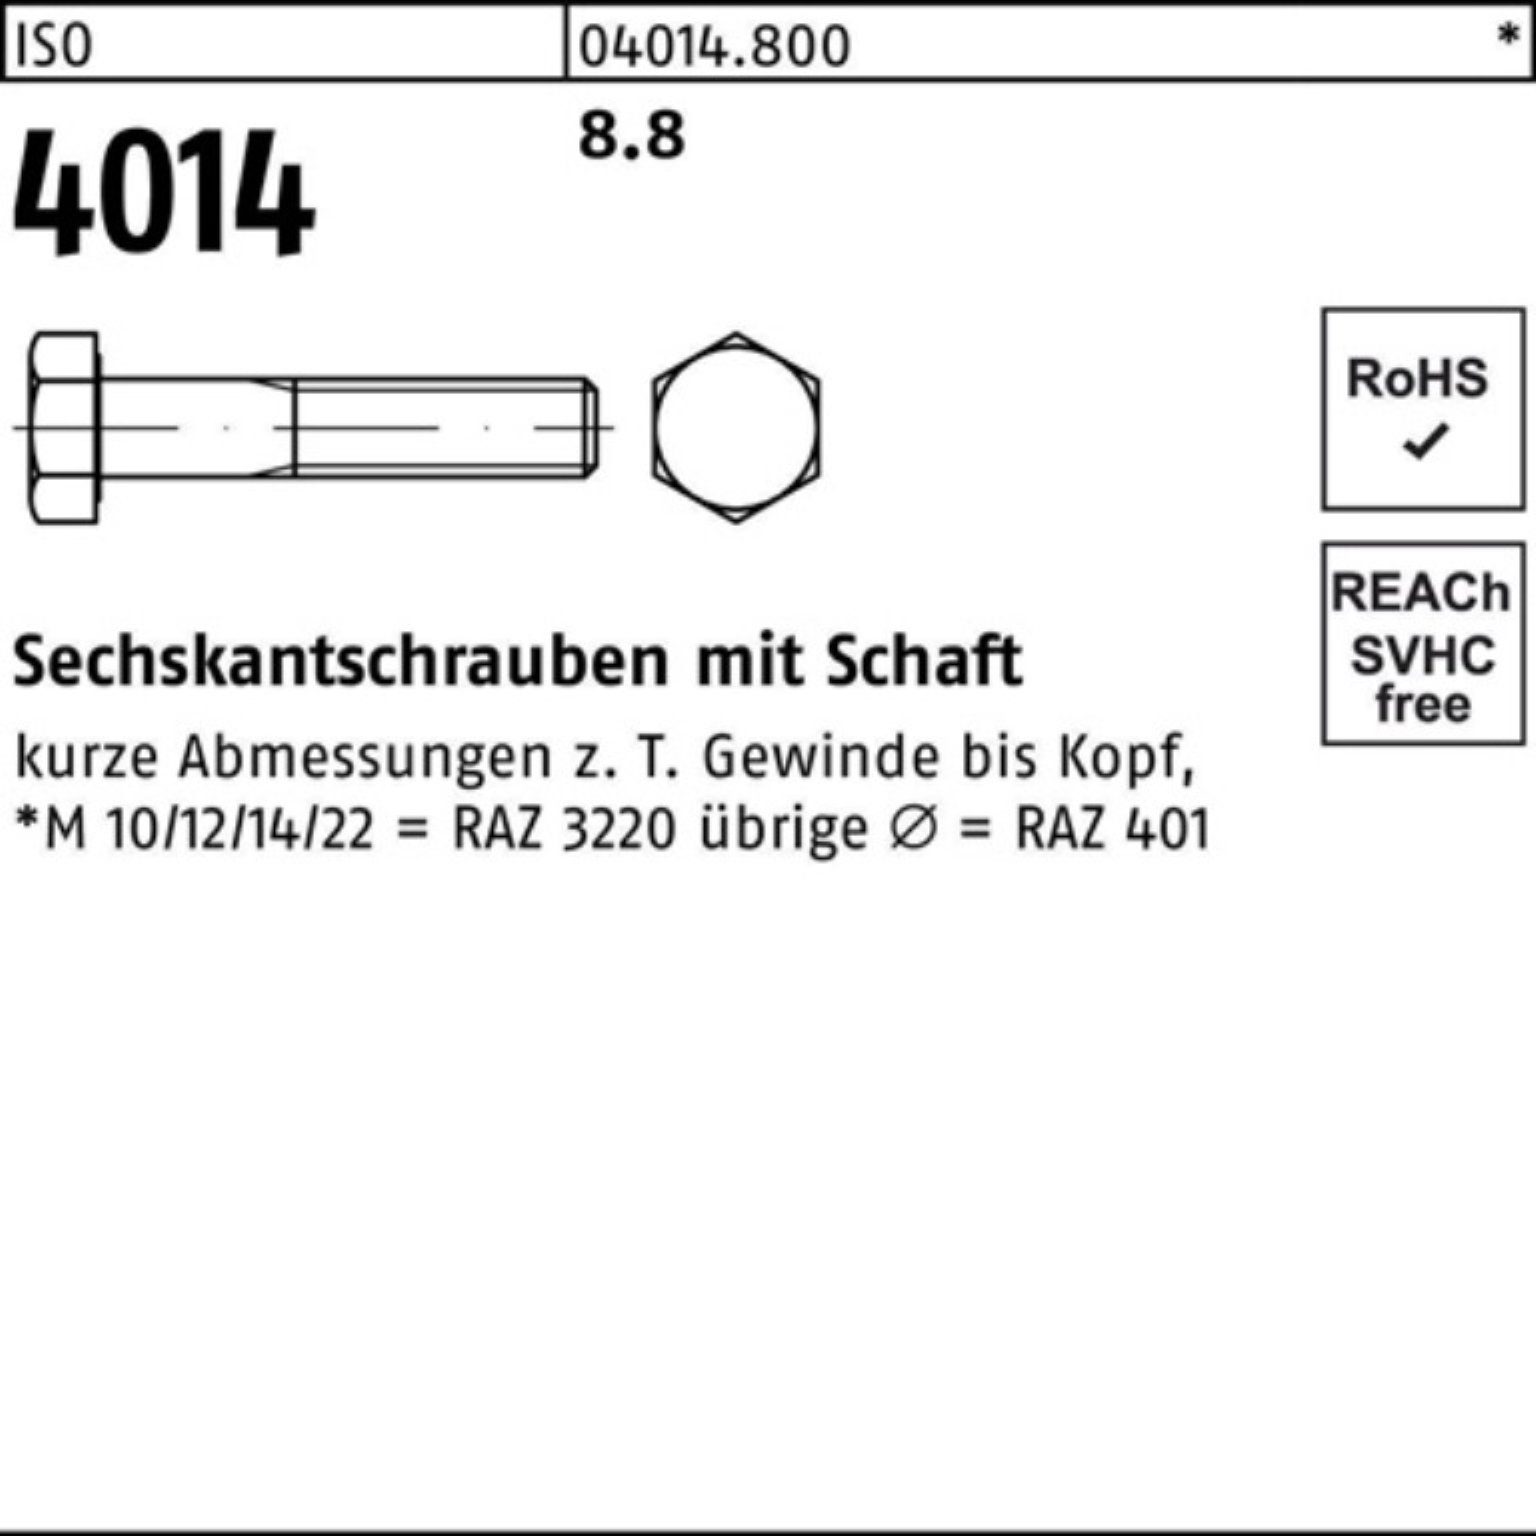 Bufab Sechskantschraube 100er Stück M56x Sechskantschraube 1 4014 Pack ISO ISO Schaft 8.8 220